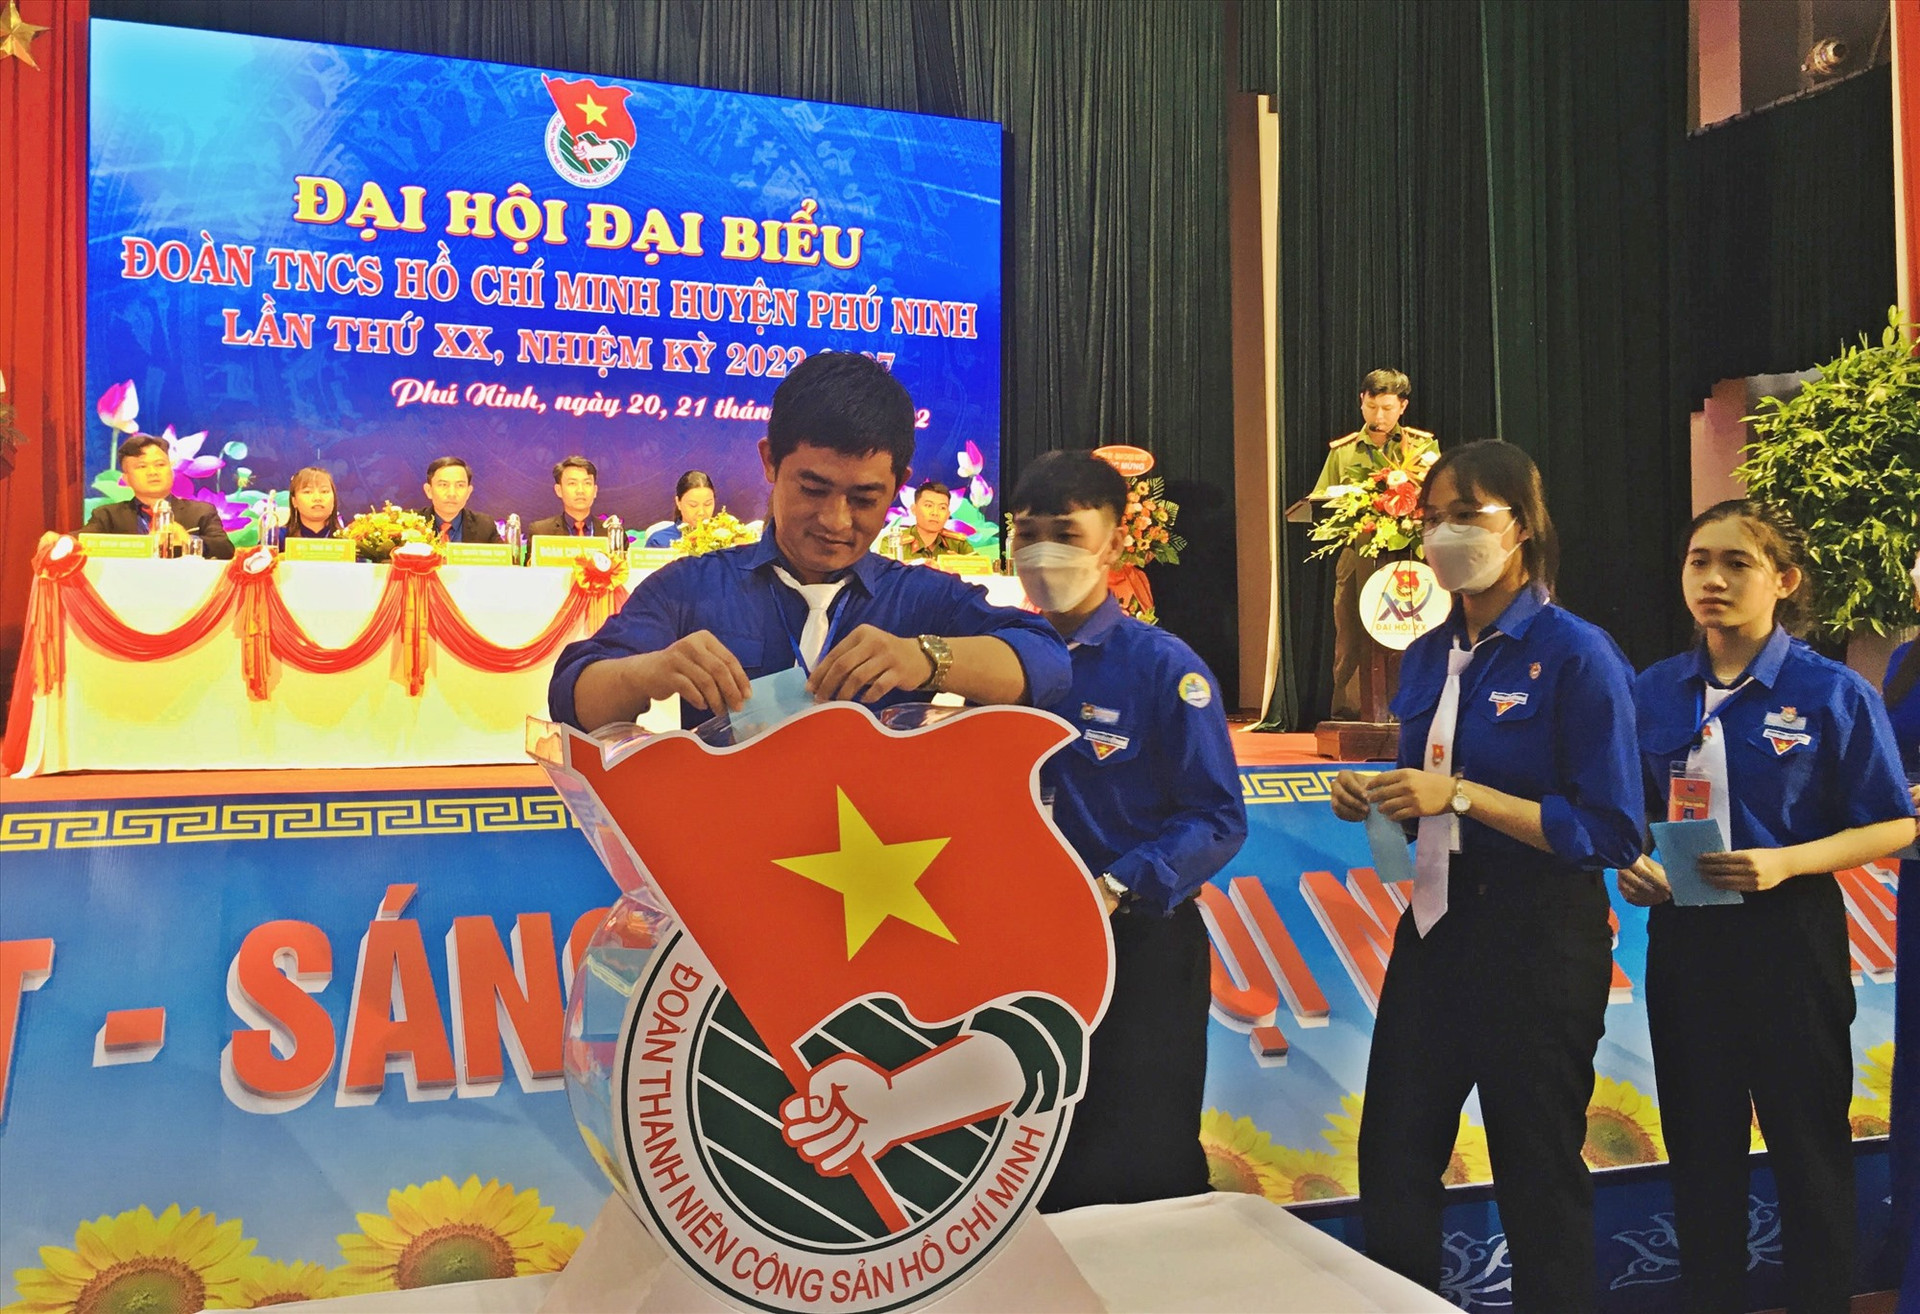 Đại hội đã bầu Ban chấp hành Huyện đoàn Phú Ninh nhiệm kỳ 2022 - 2027 gồm 21 đồng chí. Ảnh: C.Đ